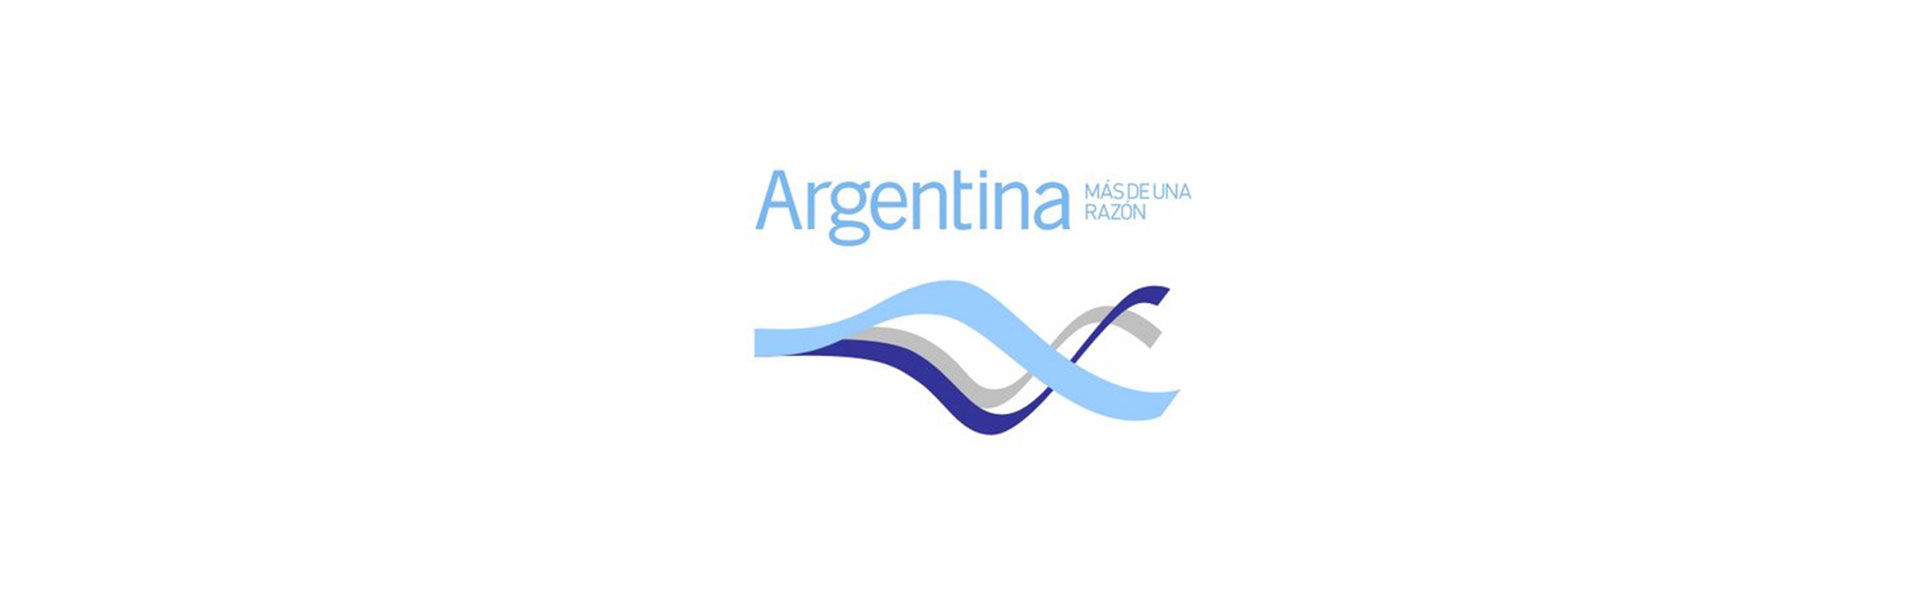 La Marca País Argentina A Través De Los Años Argentina Gob Ar